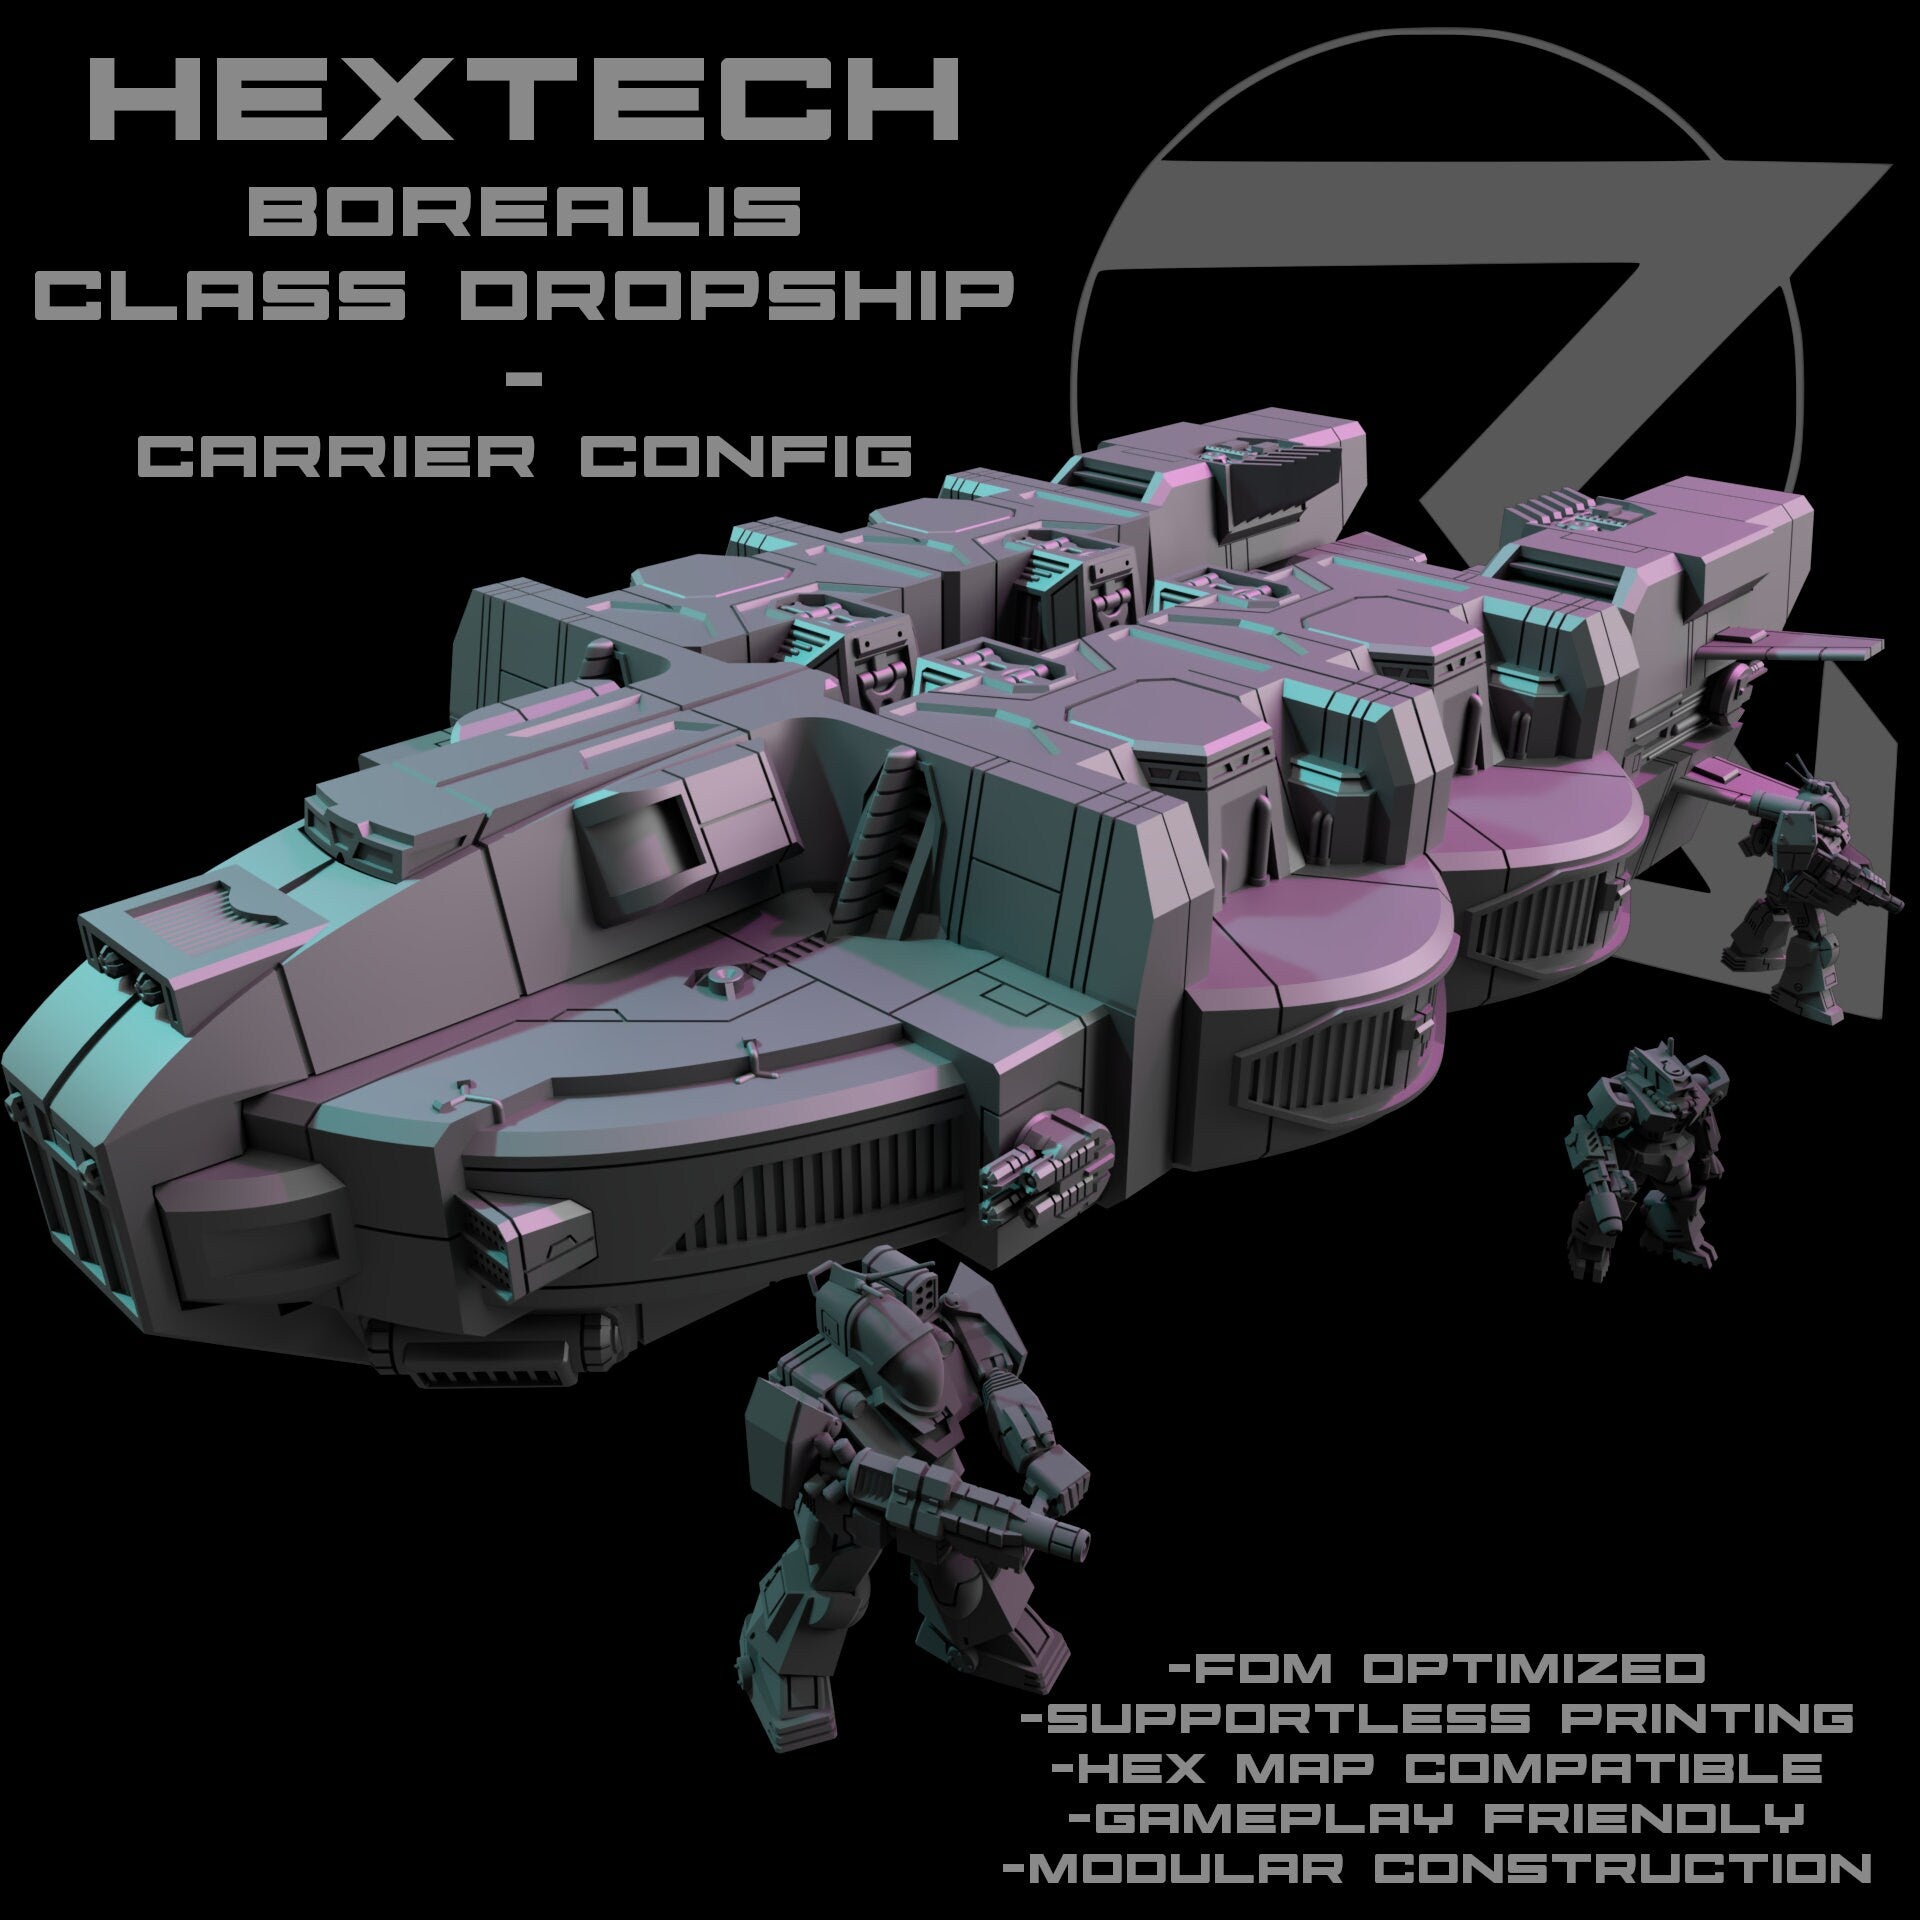 HEXTECH Borealis Cargo/Dropship for Battletech